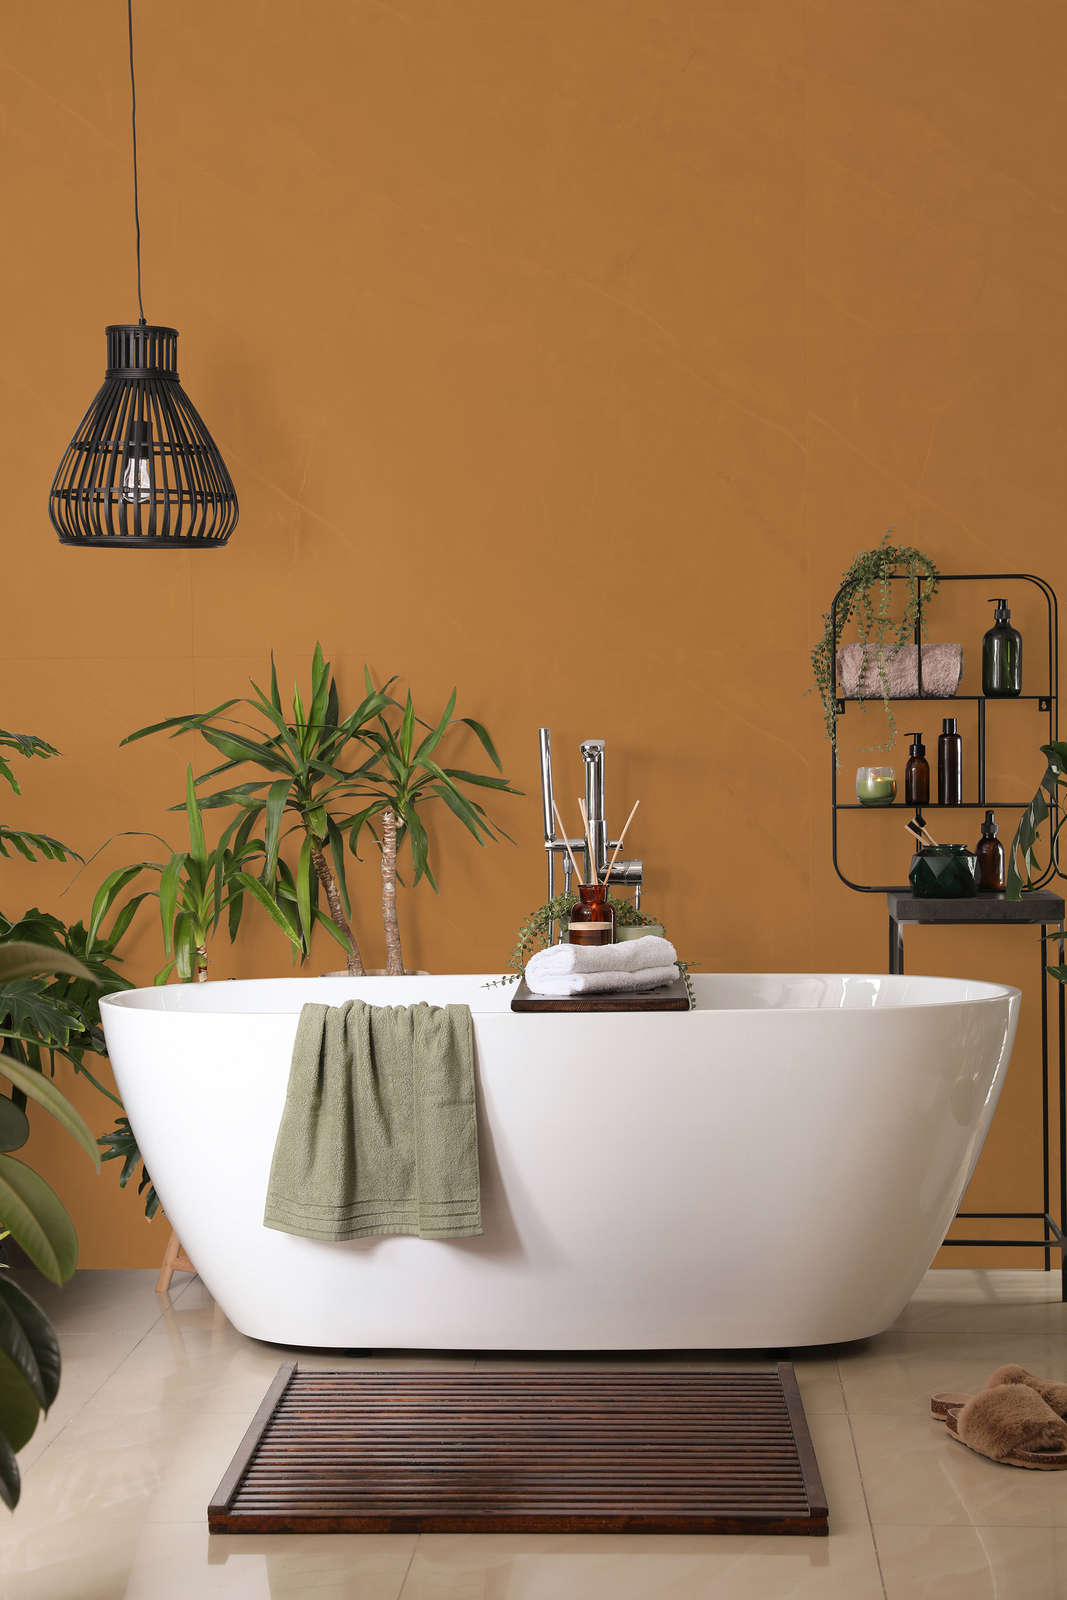             Premium Wandfarbe kräftiges Hellbraun »Beige Orange/Sassy Saffron« NW814 – 5 Liter
        